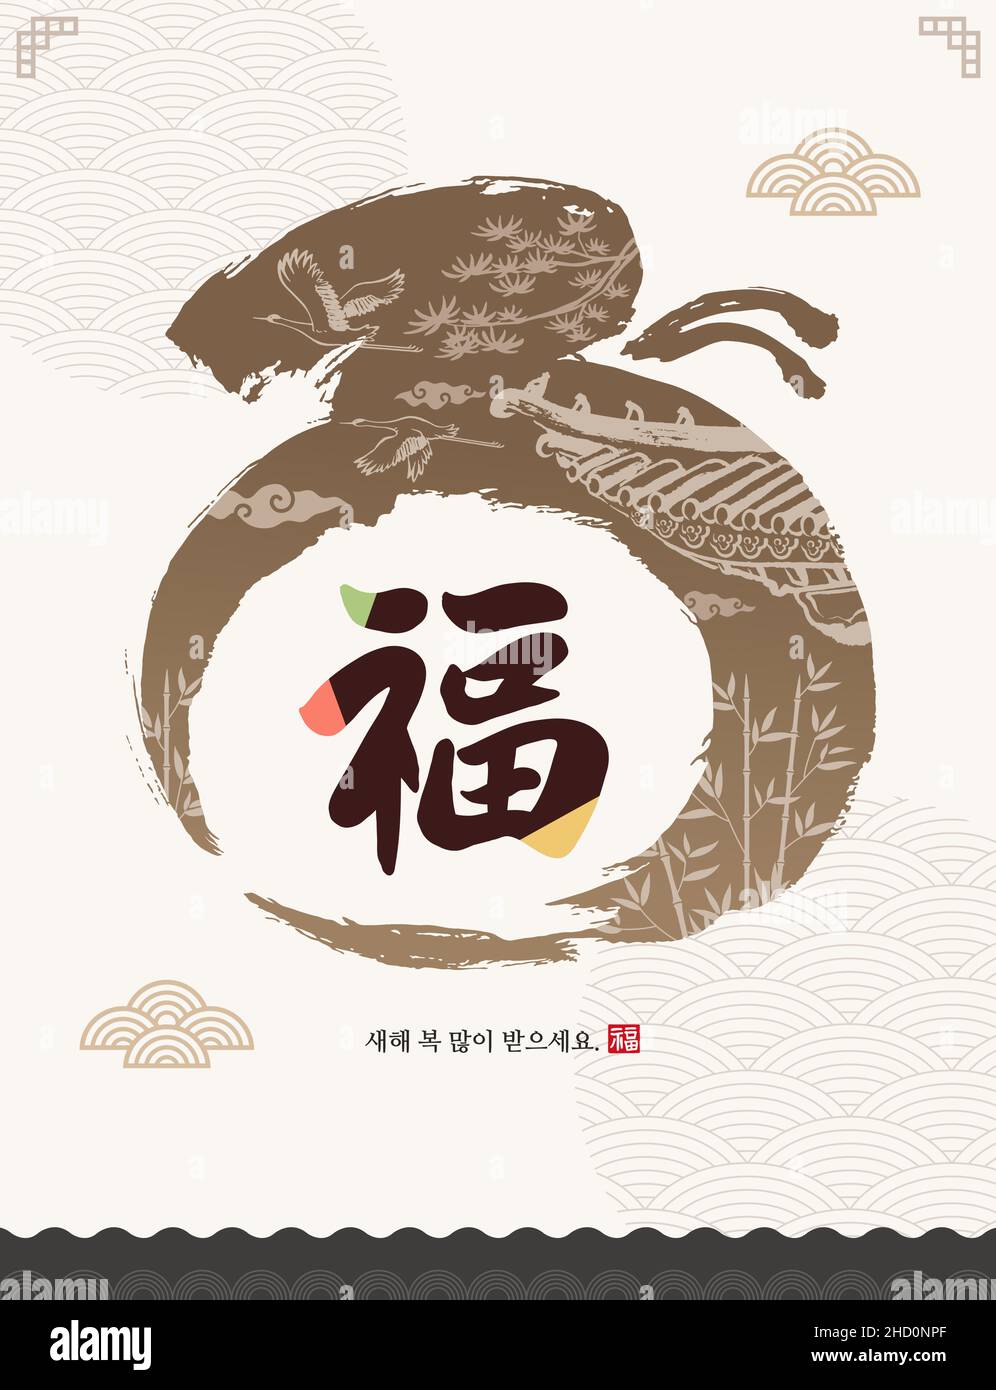 Koreanisches Neujahr Event-Design. Hanok-Dach, natürliche Landschaft, traditionelle Glückstüten Pinsel Malerei. Frohes neues Jahr, koreanische Übersetzung. Stock Vektor